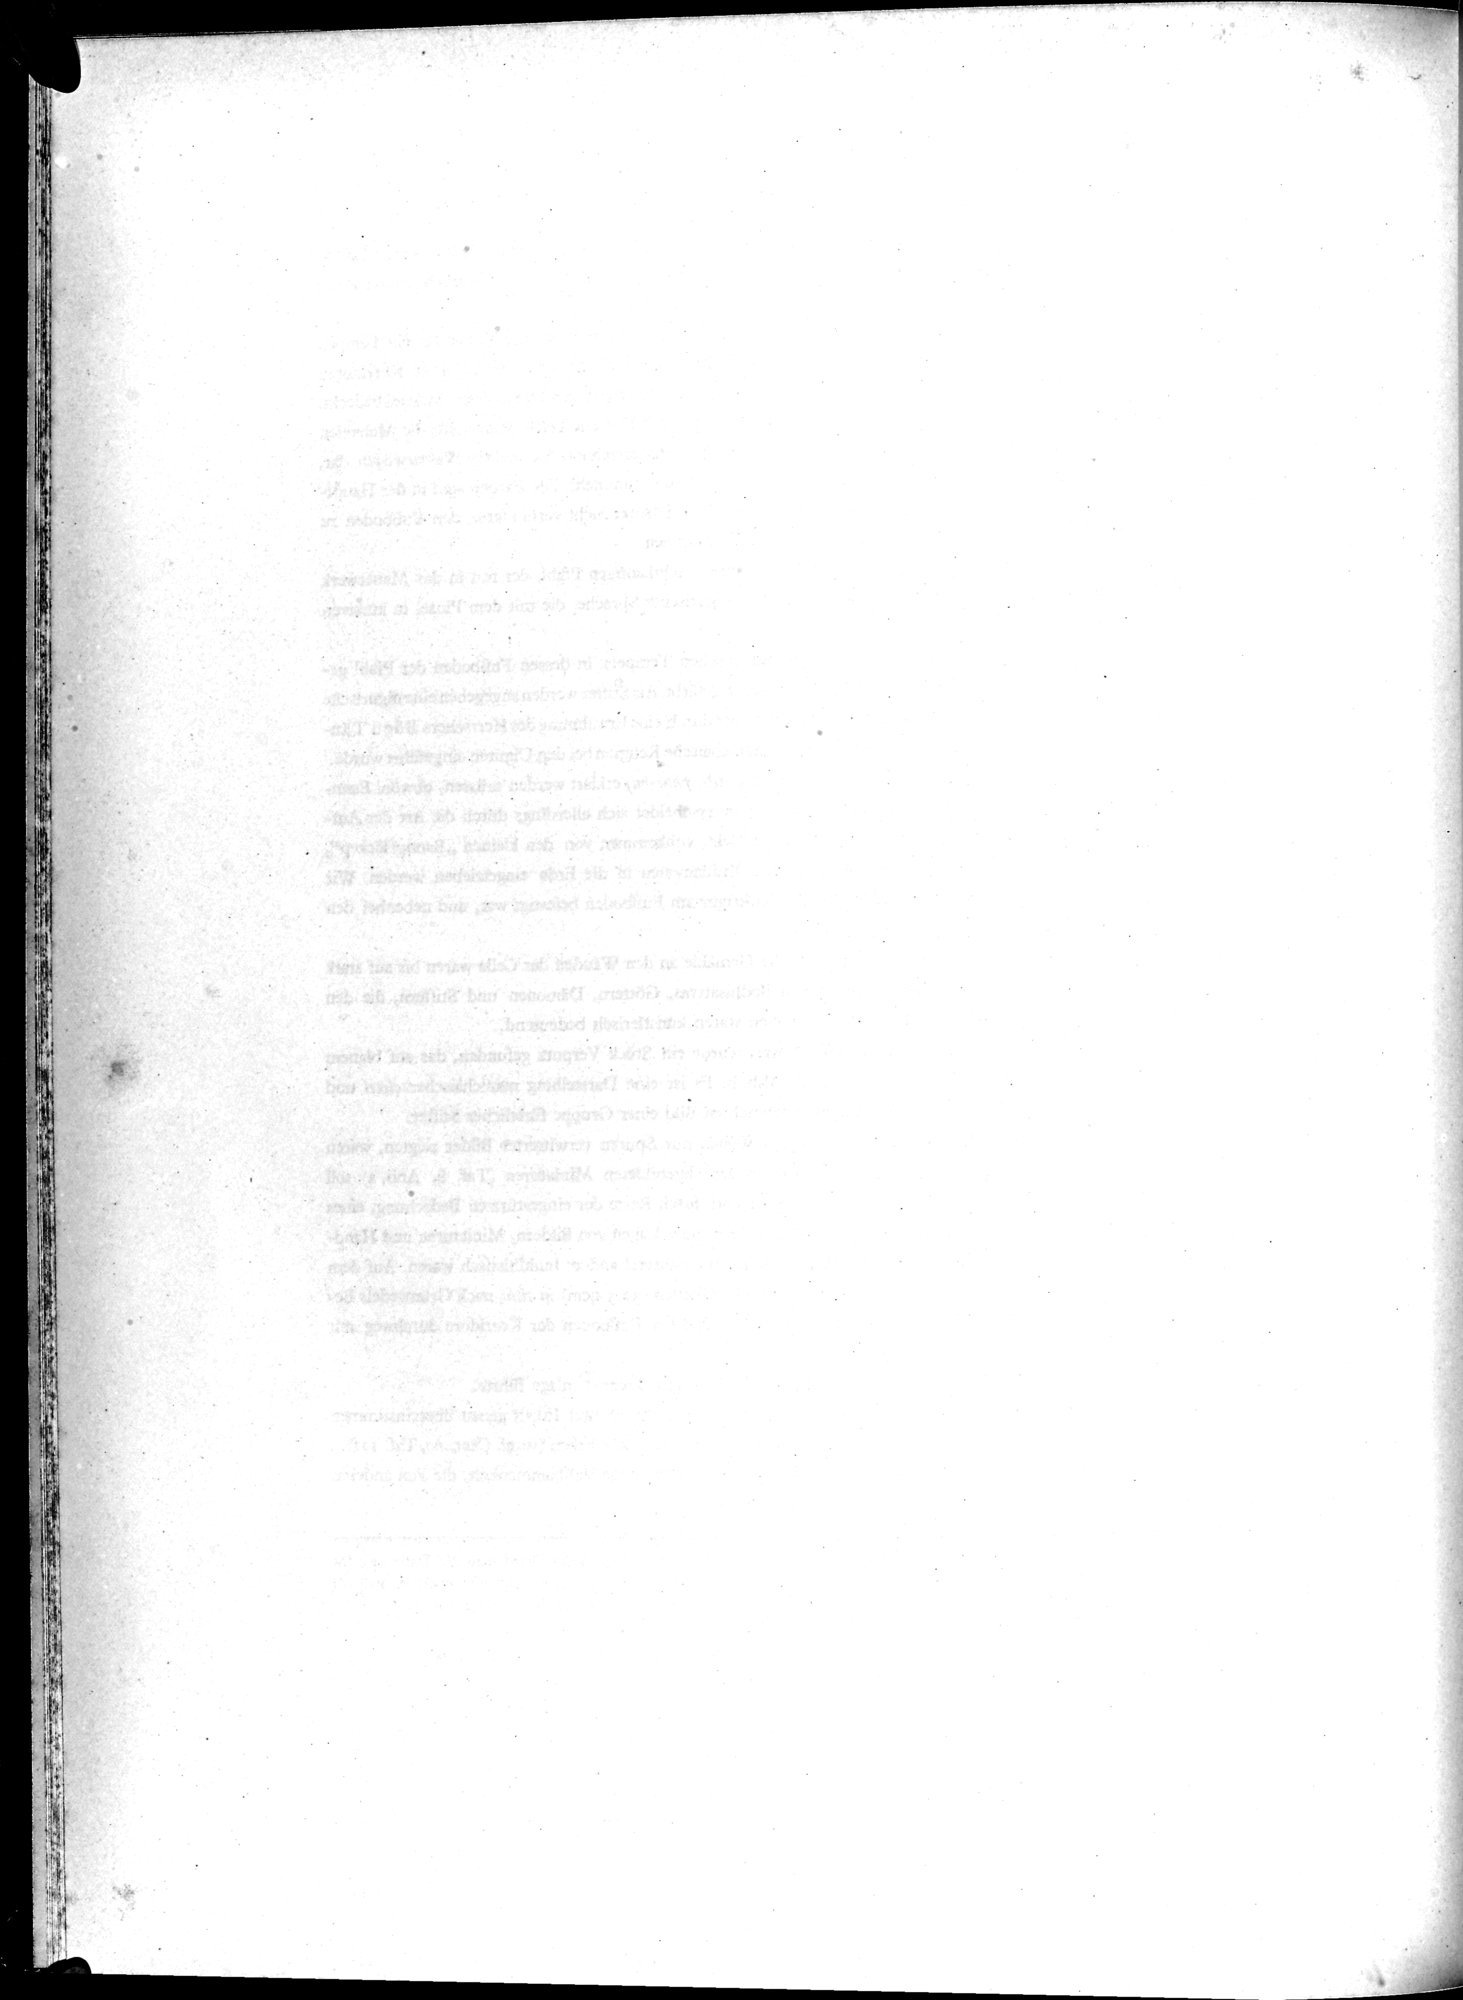 Die Buddhistische Spätantike in Mittelasien : vol.2 / Page 34 (Grayscale High Resolution Image)